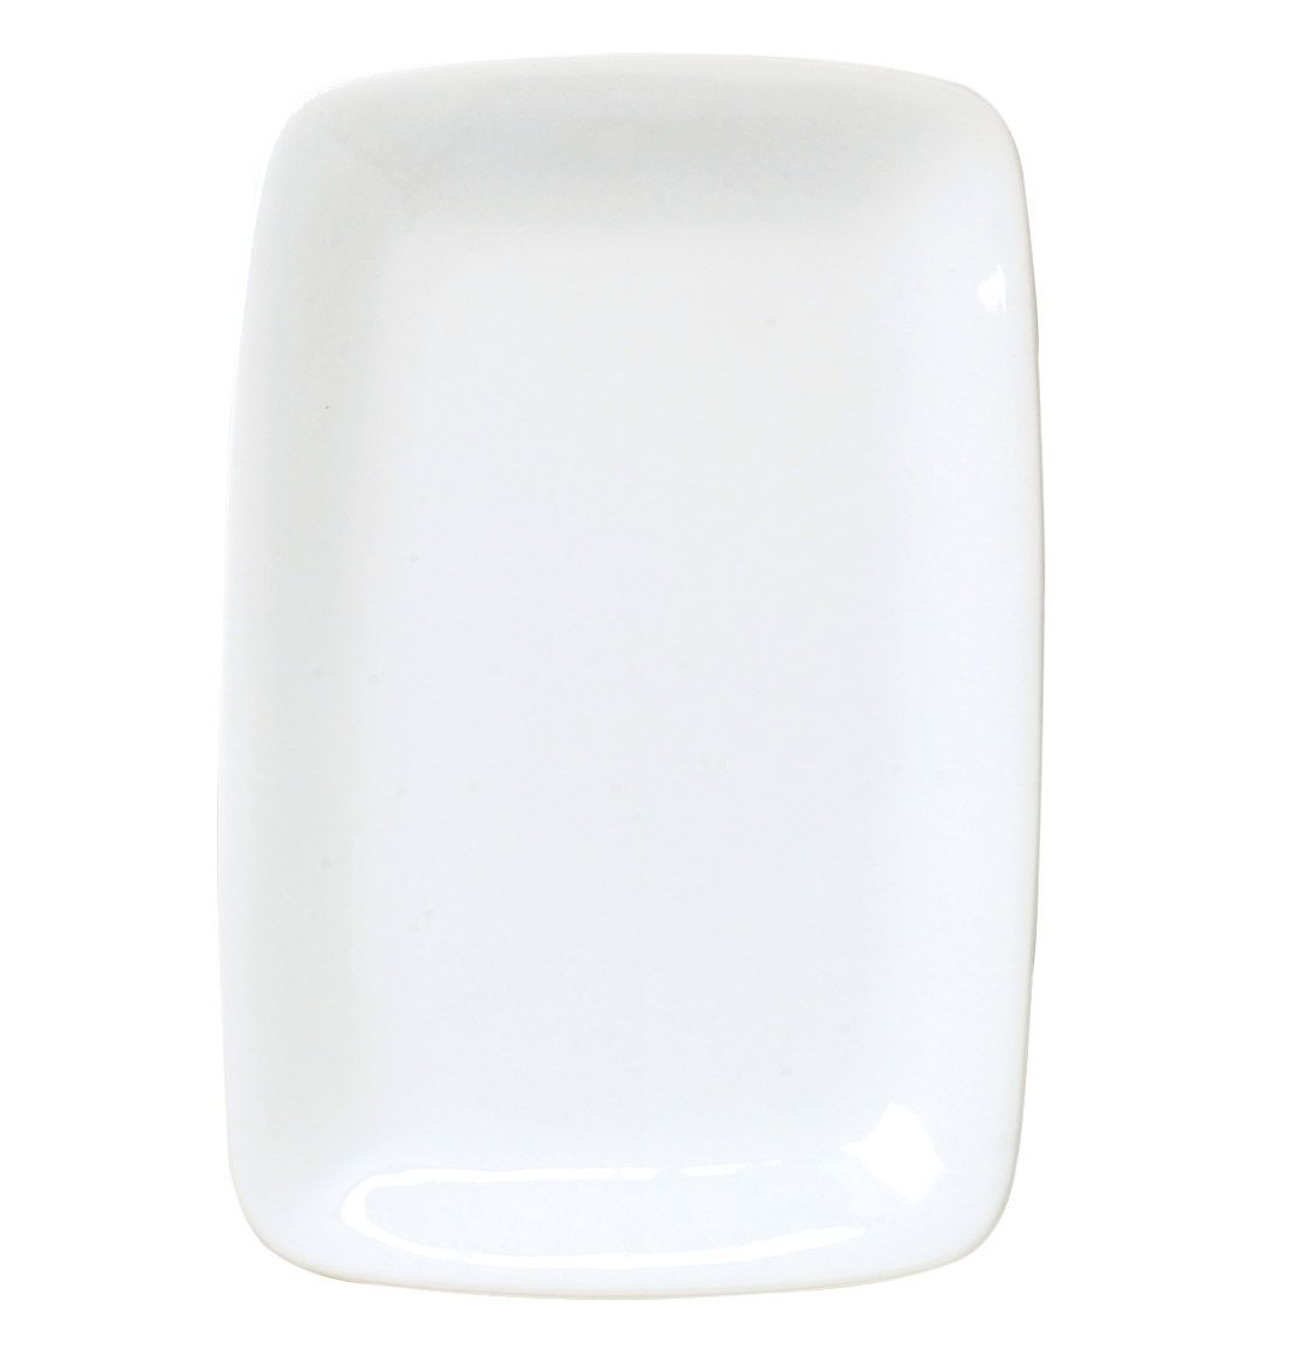 Porcelain Rectangular Platter – White – 12.25"